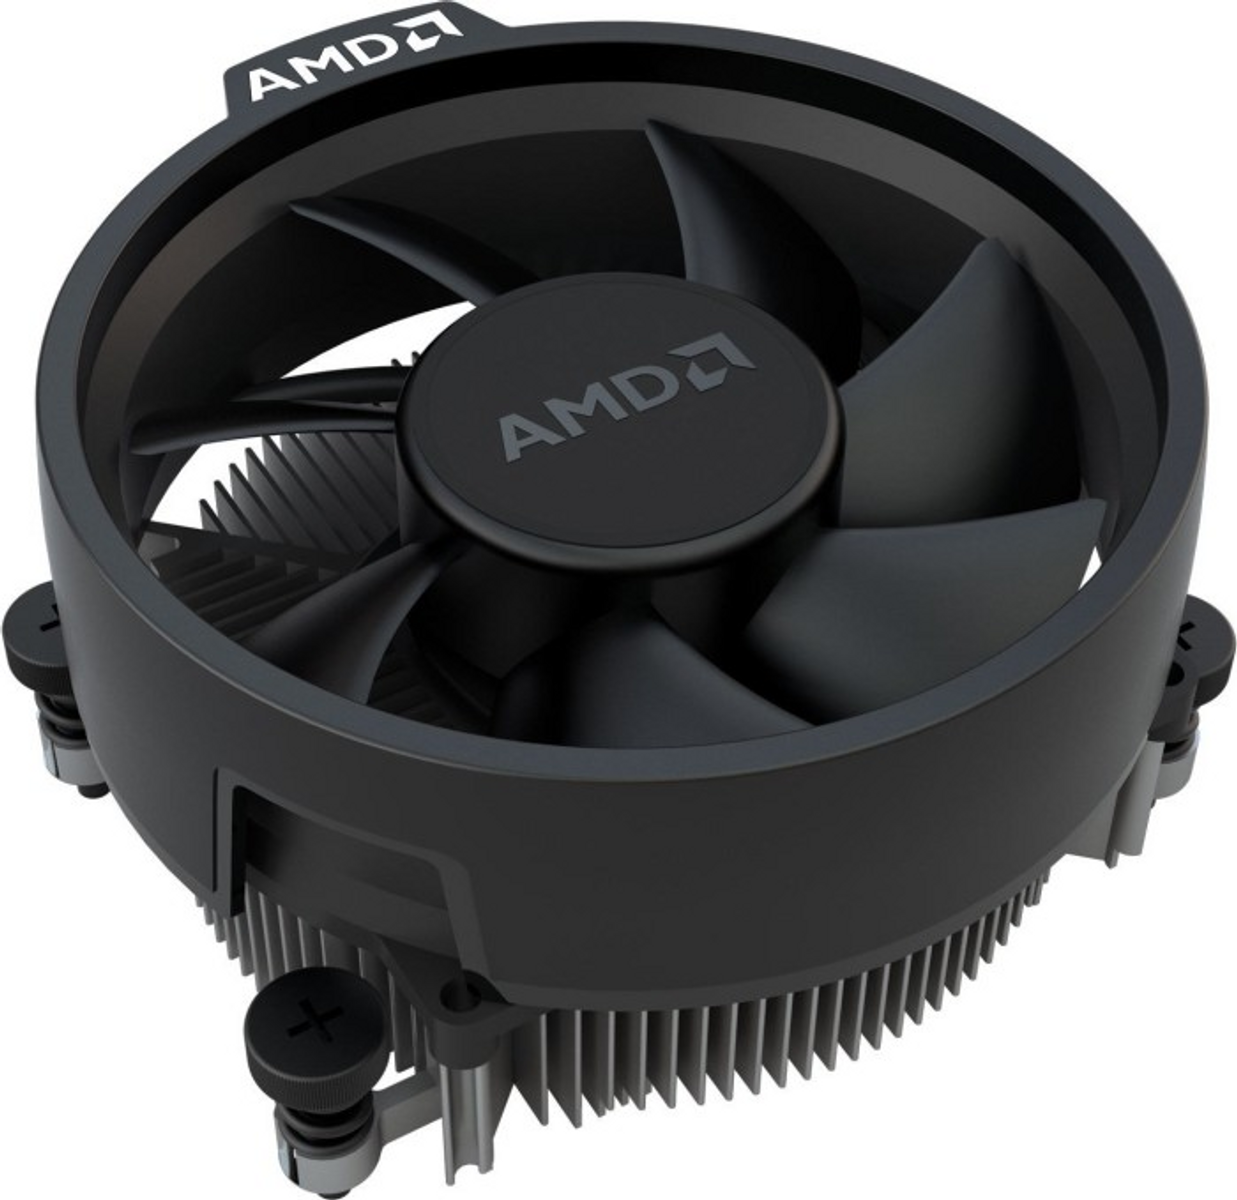 5700G Mehrfarbig Boxed-Kühler, Prozessor AMD mit